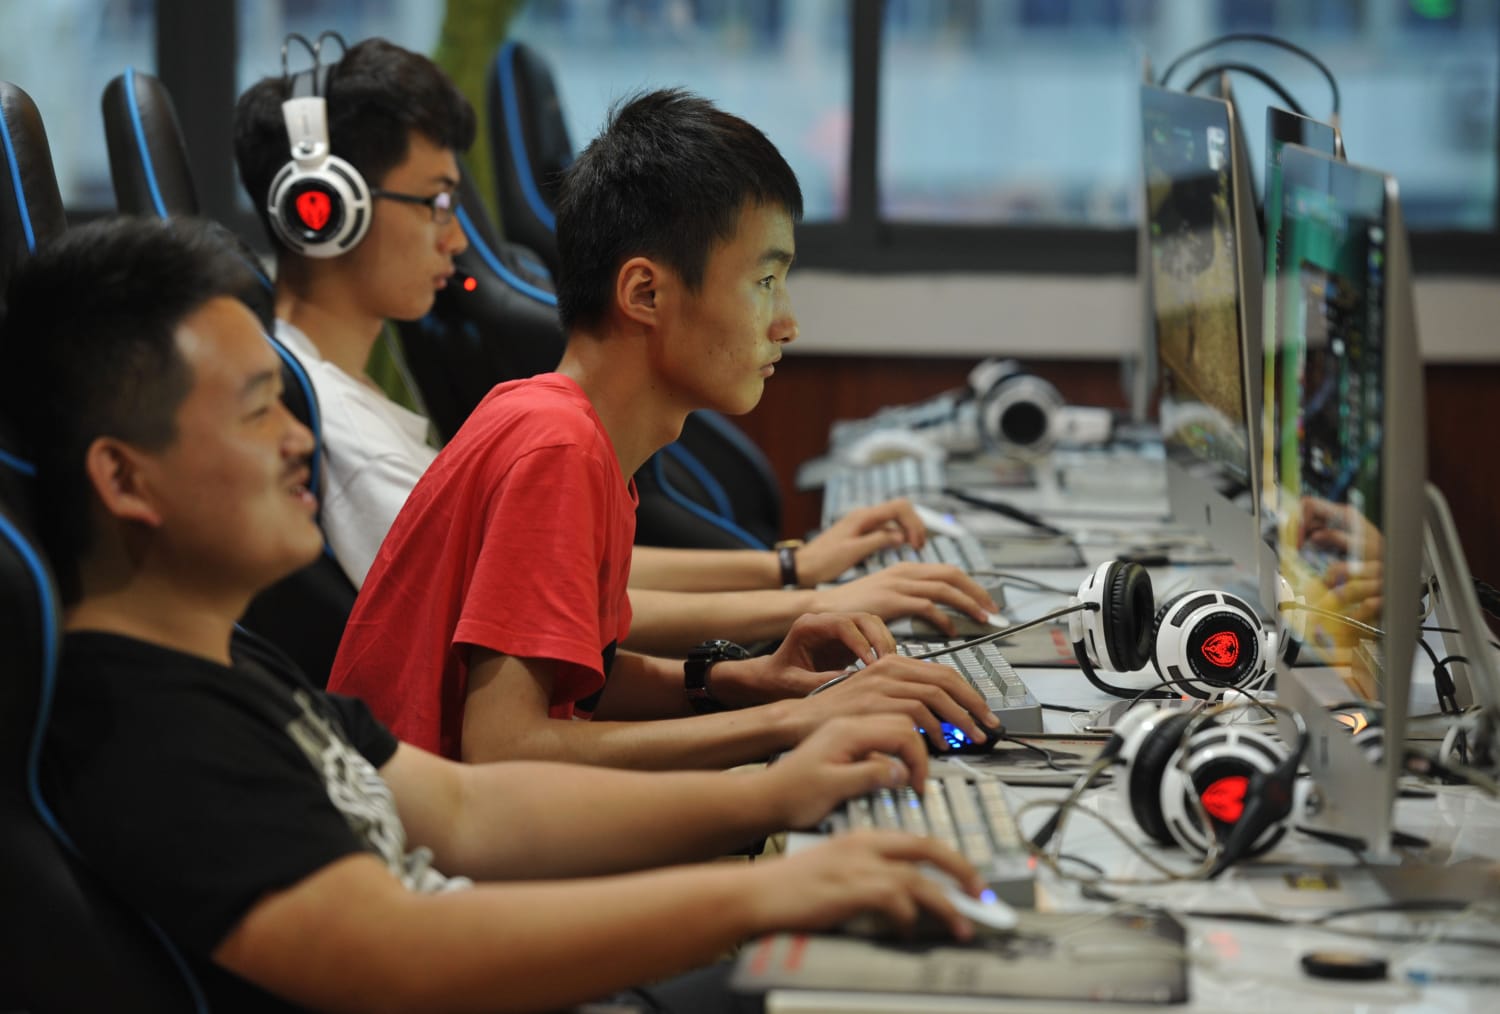 Китайский интернет. Интернет кафе в Китае. Китаец за компьютером. Китаец геймер. Китайские геймеры.